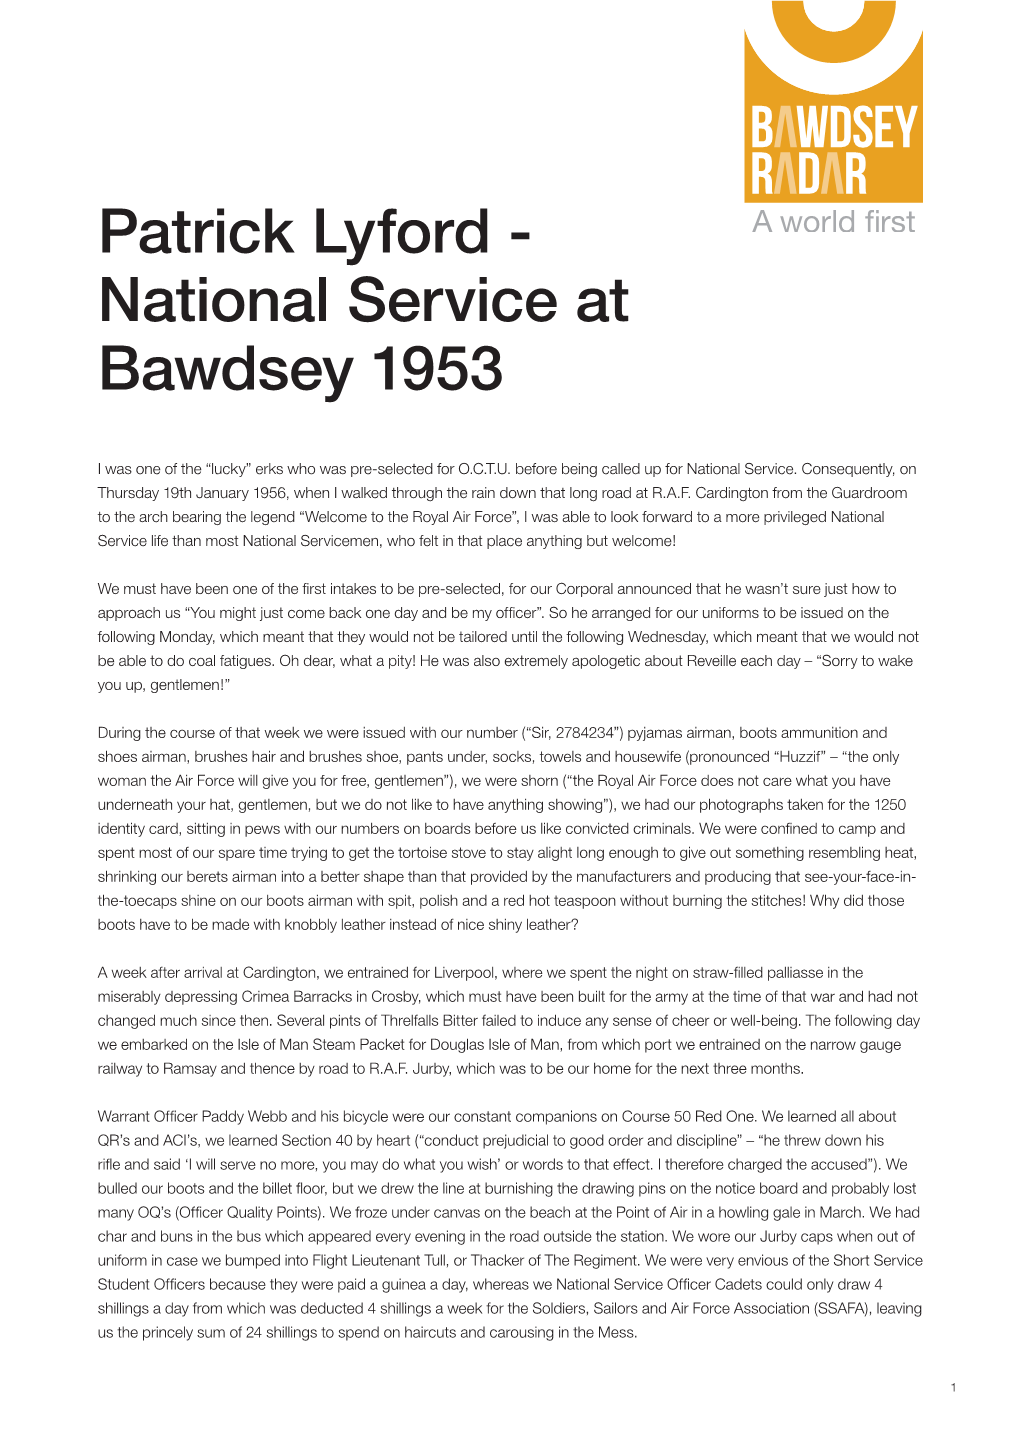 Patrick Lyford - National Service at Bawdsey 1953